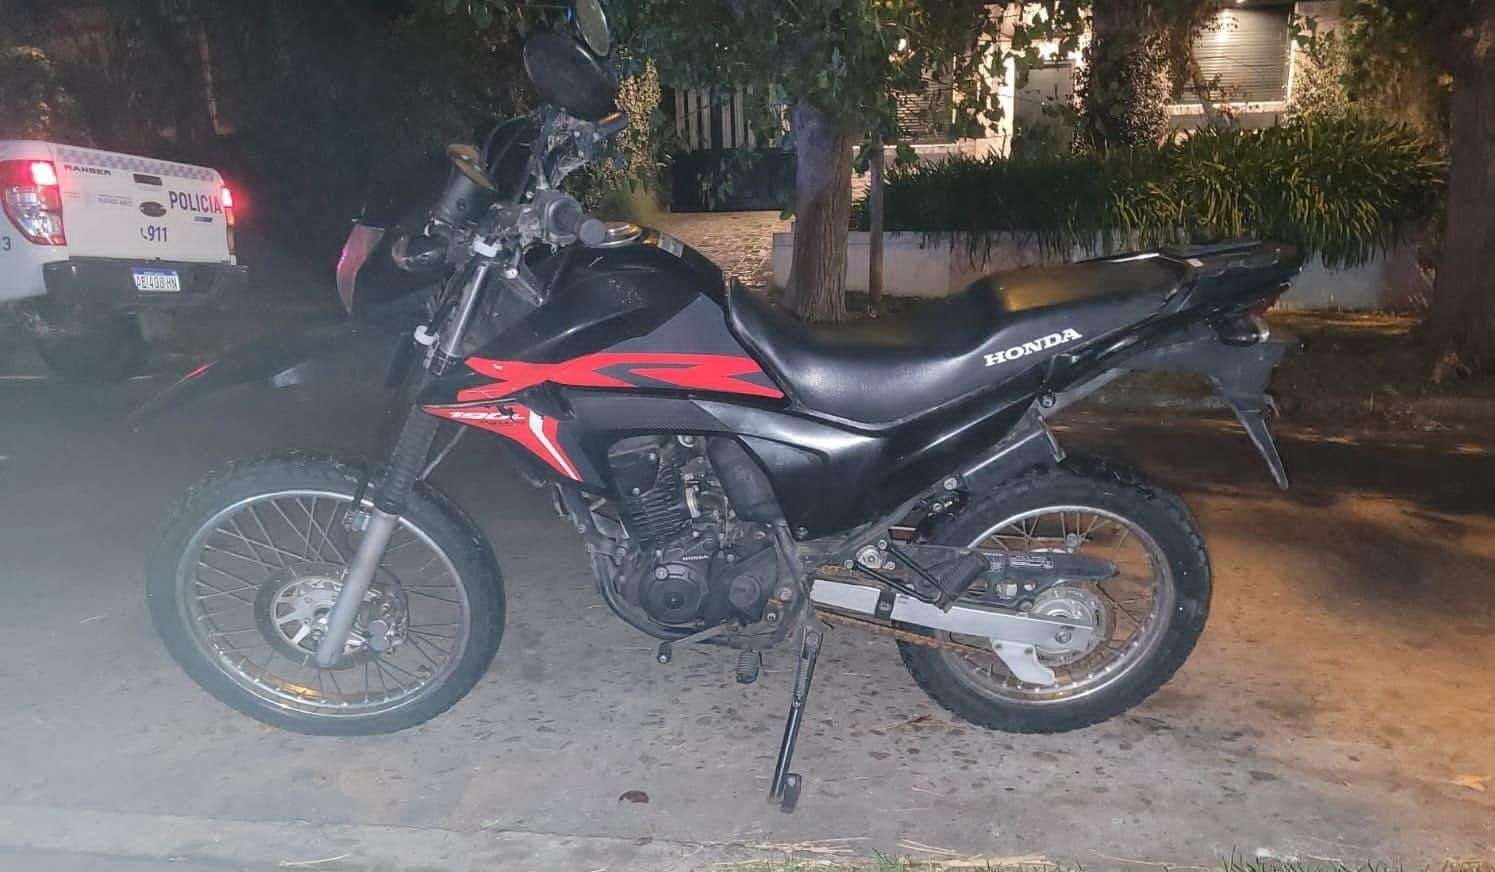 Un chico de 13 años ingresó al patio de una casa y robó una moto